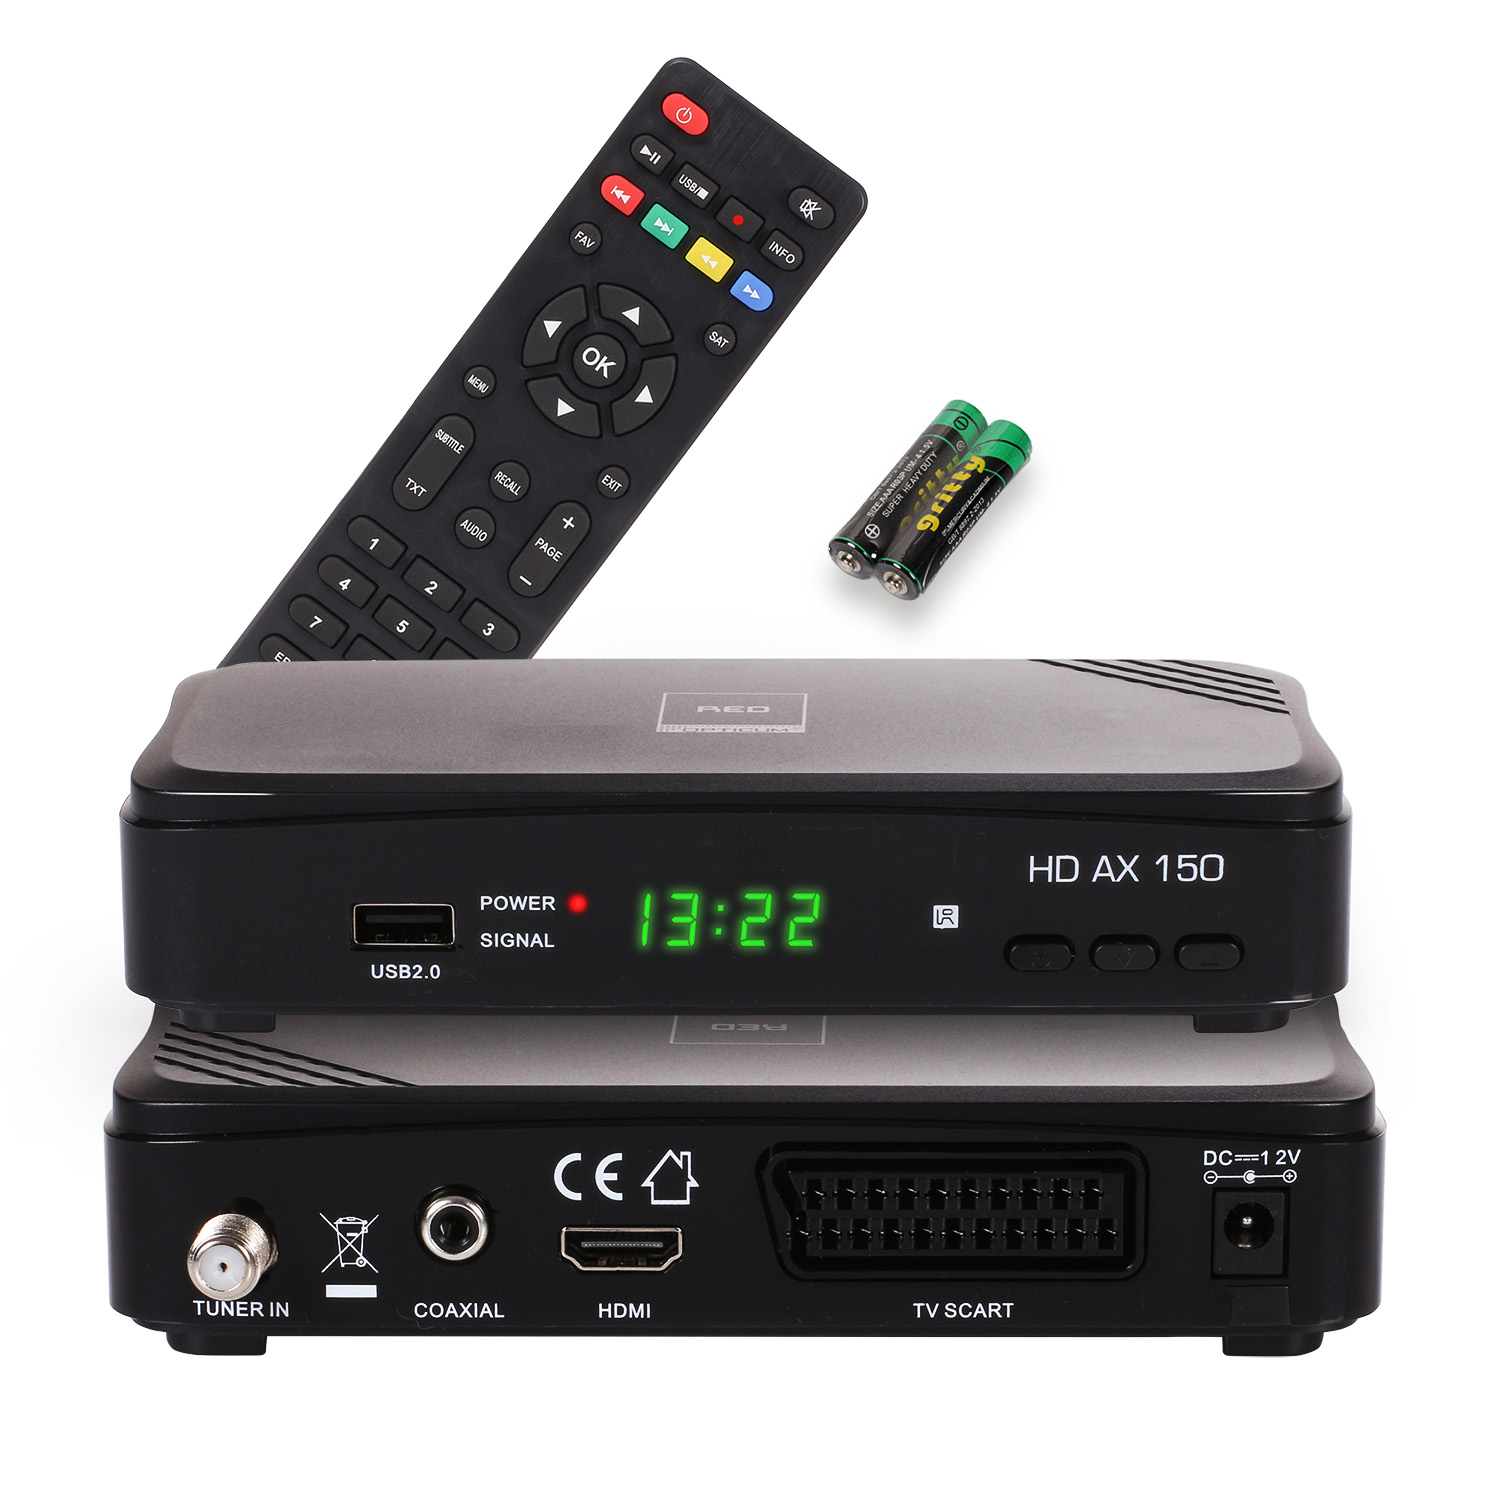 (HDTV, PVR Opticum DVB-S2, AX 150 OPTICUM PVR-Funktion, mit Sat-Receiver RED schwarz) DVB-S,